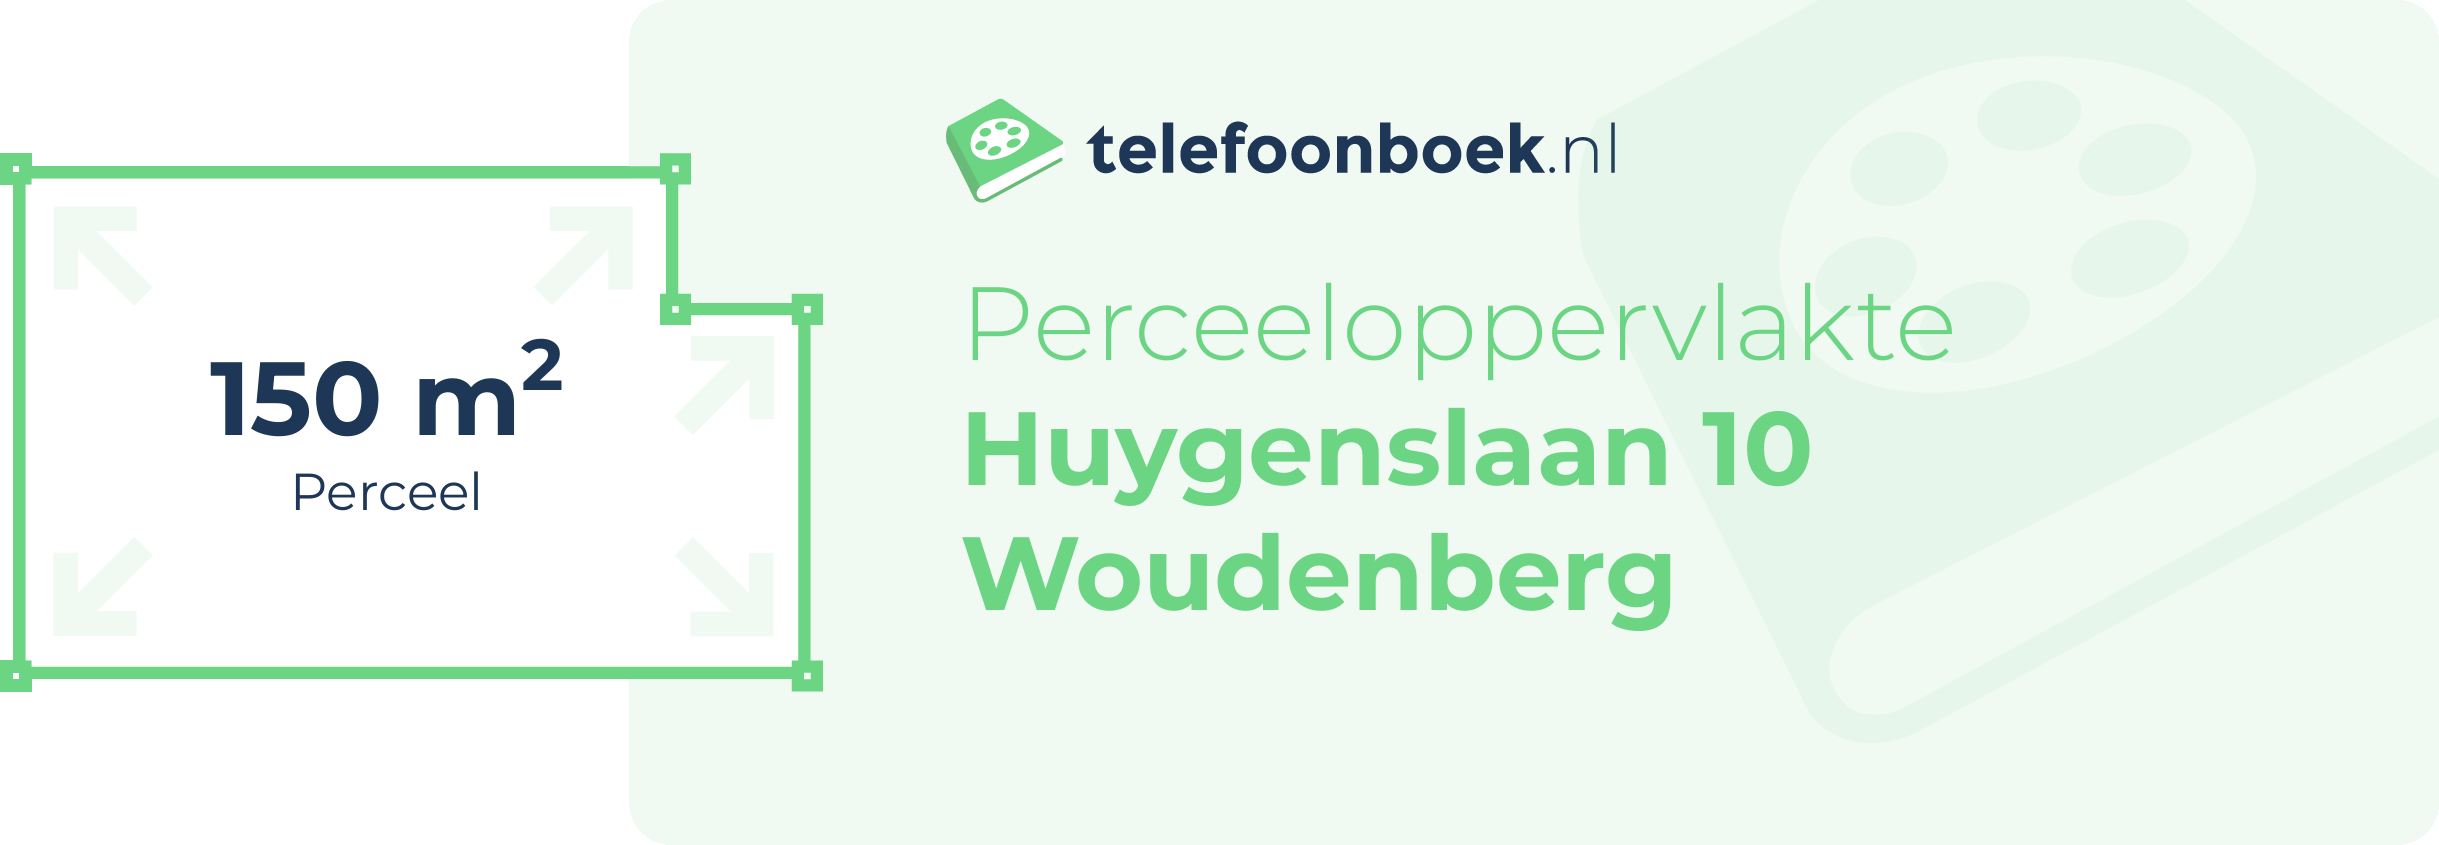 Perceeloppervlakte Huygenslaan 10 Woudenberg